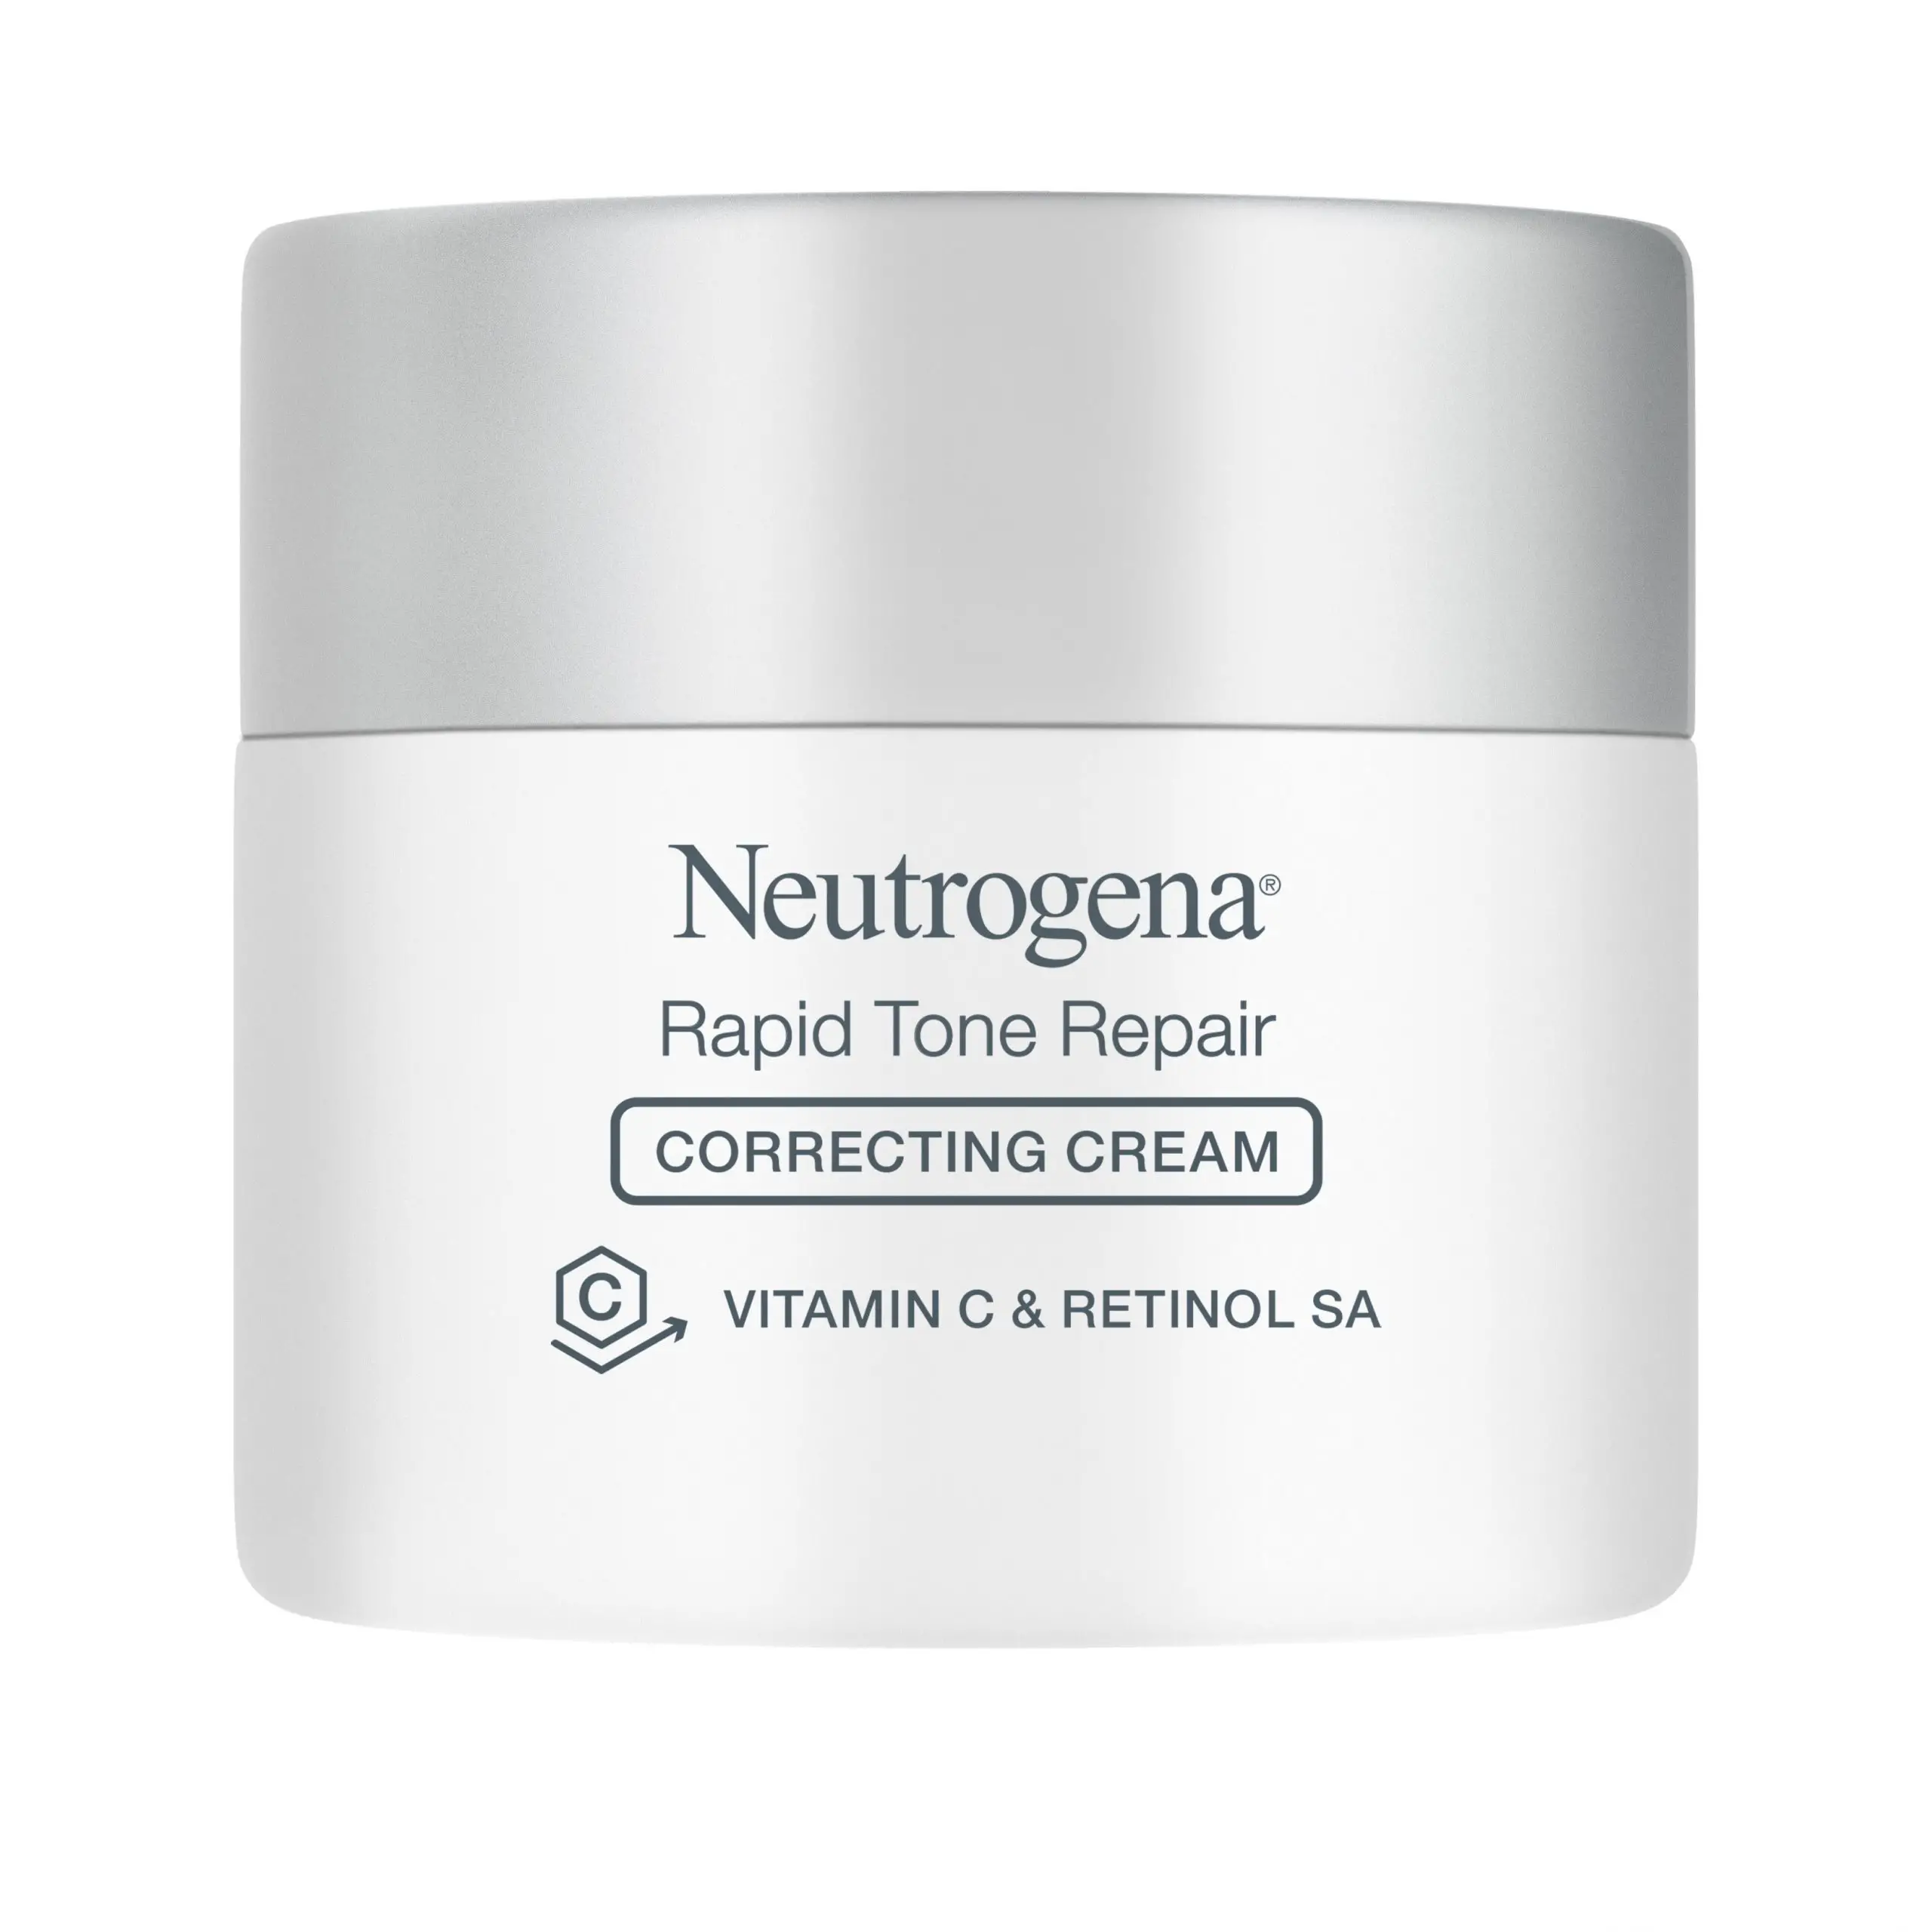 Neutrogena Rapid Tone Repair Correcting Cream Vitamin C, Retinol ...